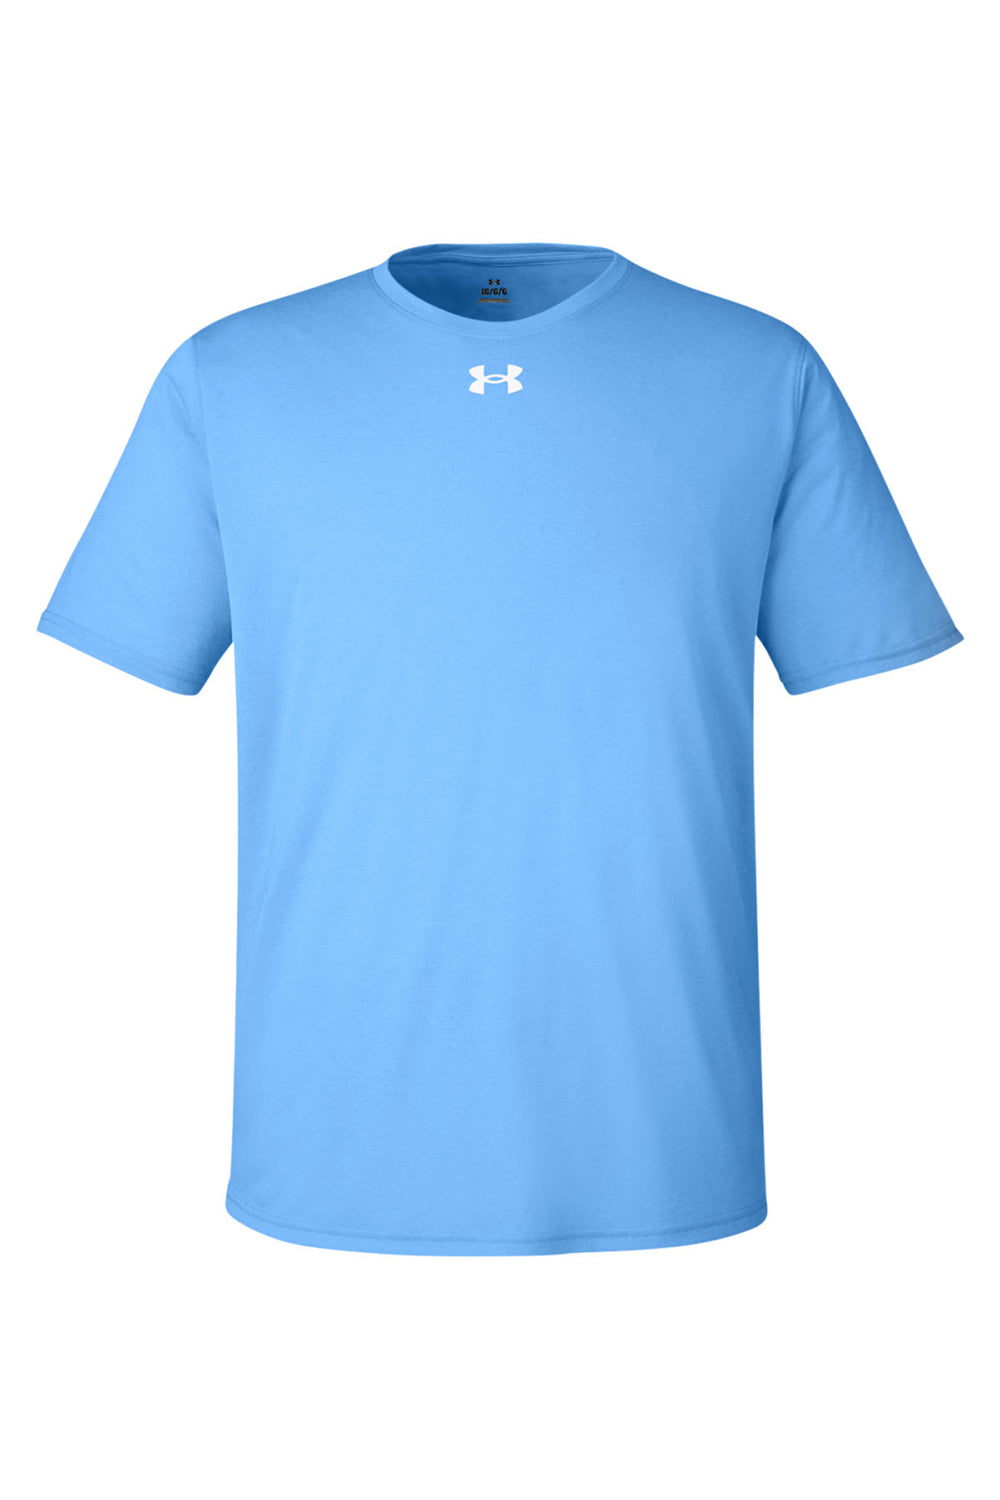 Under Armour 1376842 Mens Team Tech Moisture Wicking Short Sleeve Crewneck T-Shirt Carolina Blue Flat Front